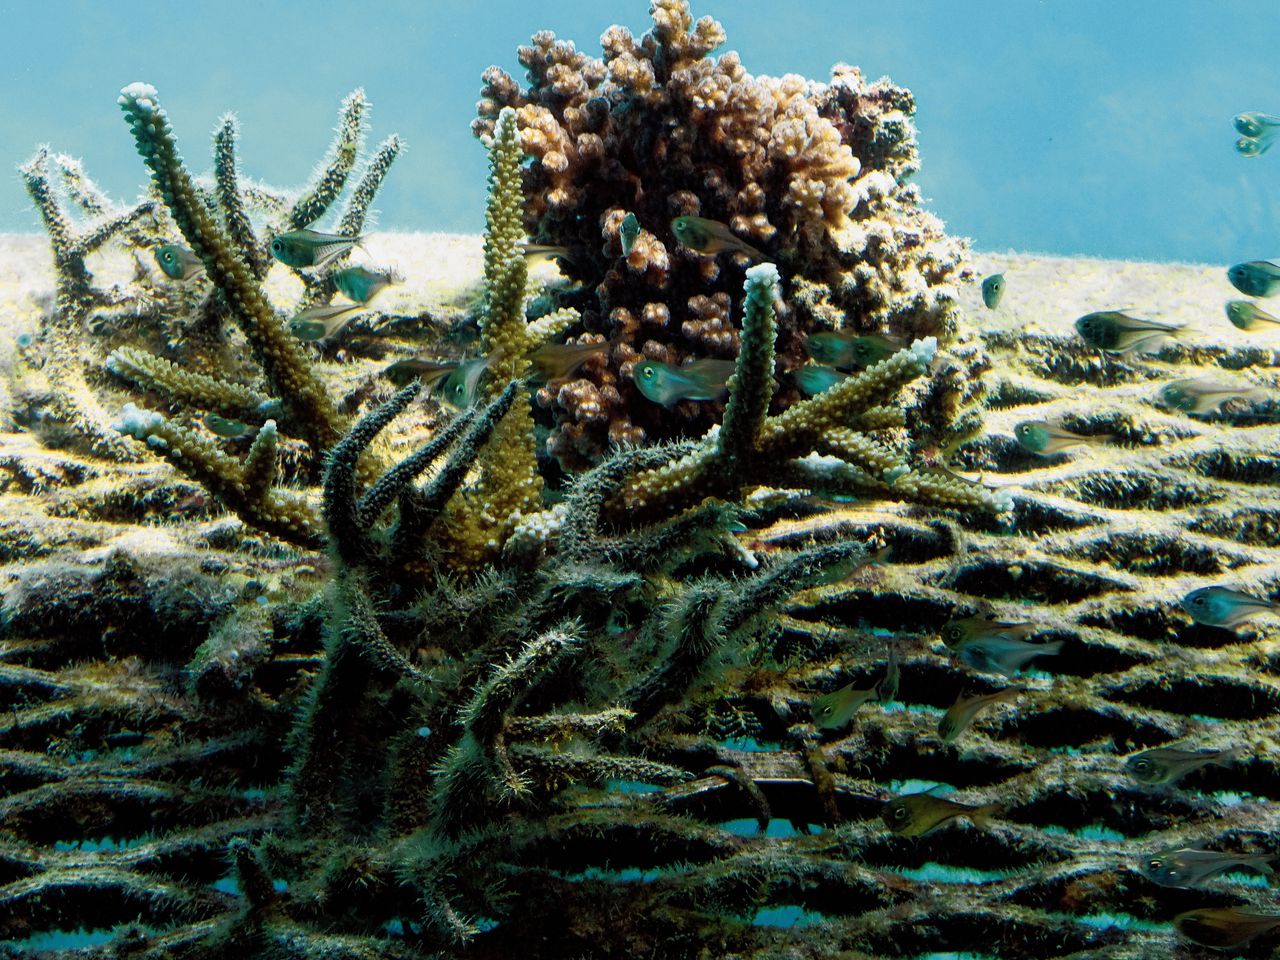 Verbleekt koraal in het Groot Barrièrerif bij Australië, als gevolg van opwarmend zeewater.